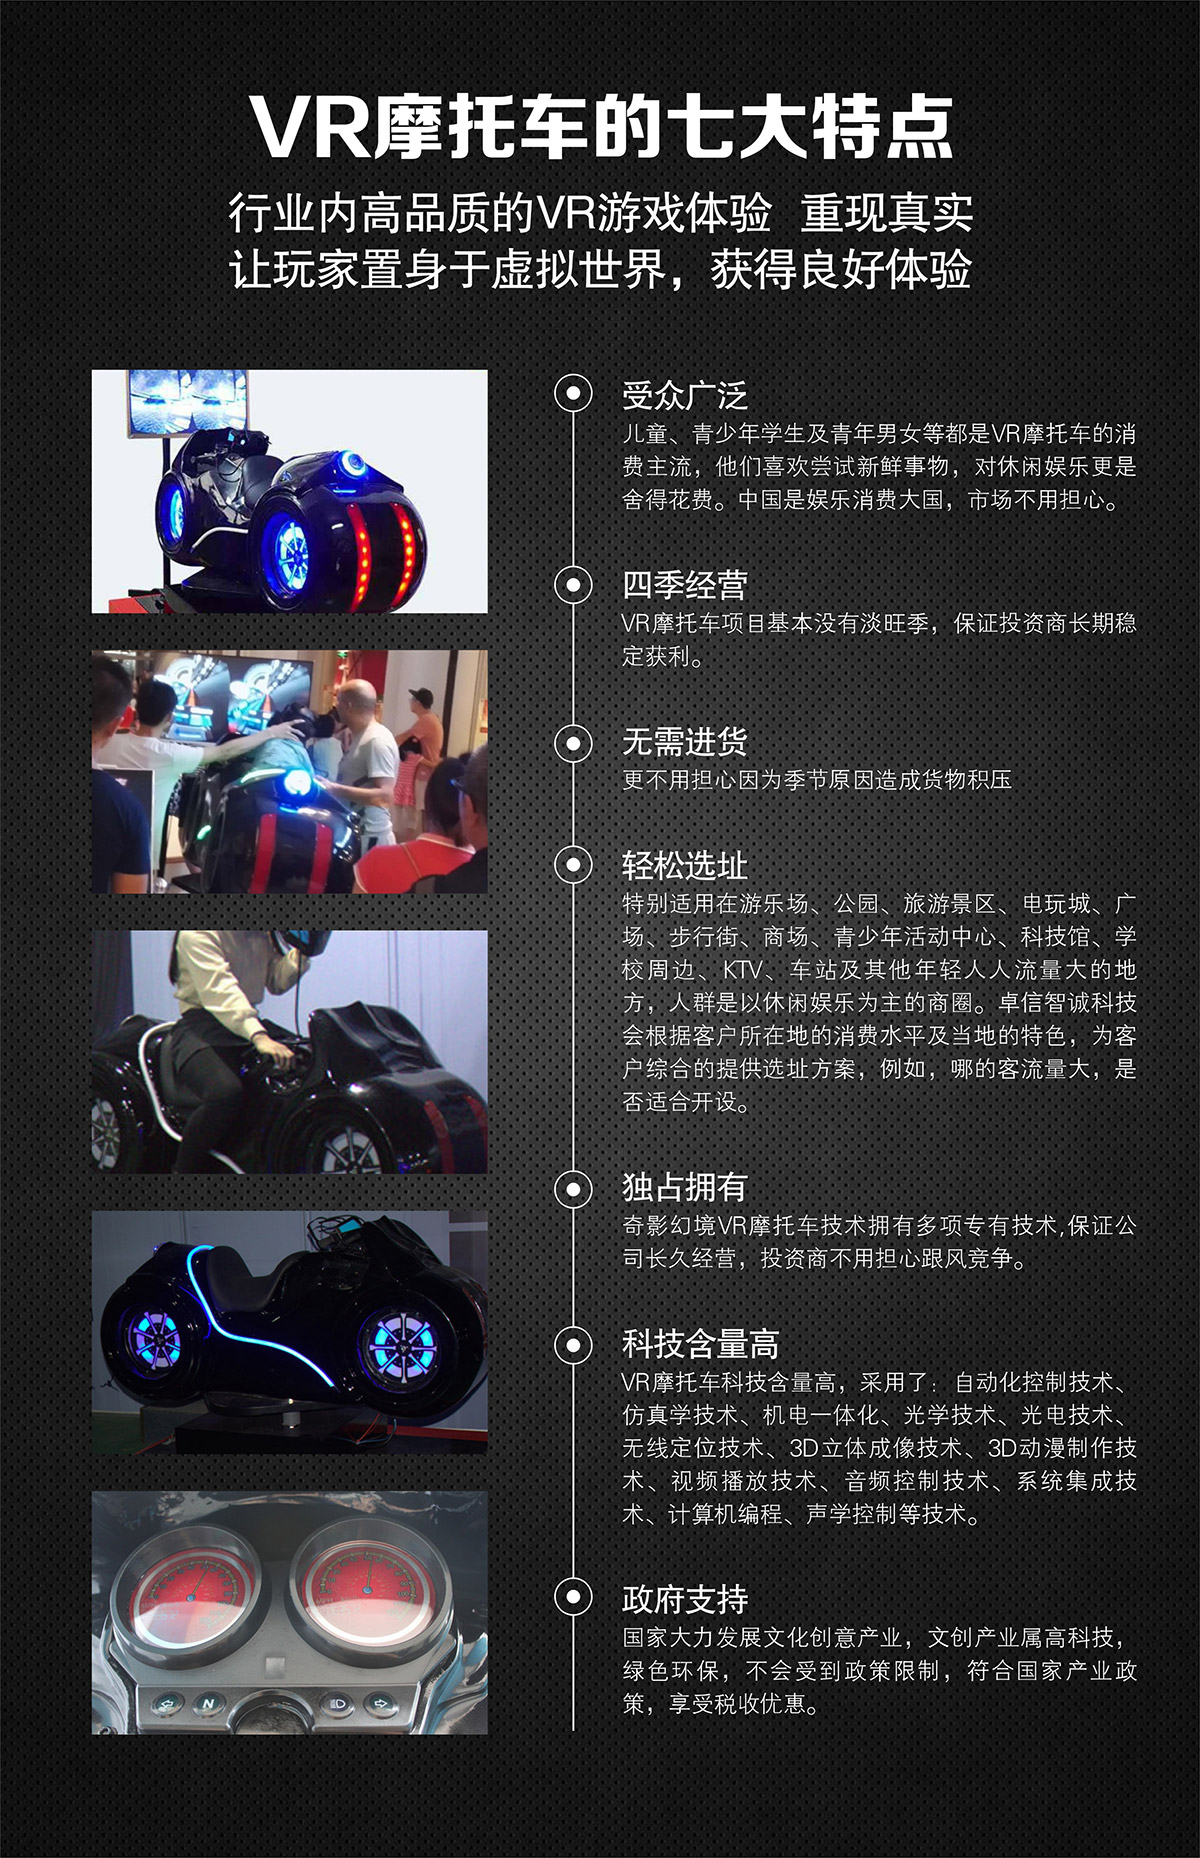 模拟体验VR摩托车特点高品质游戏体验.jpg